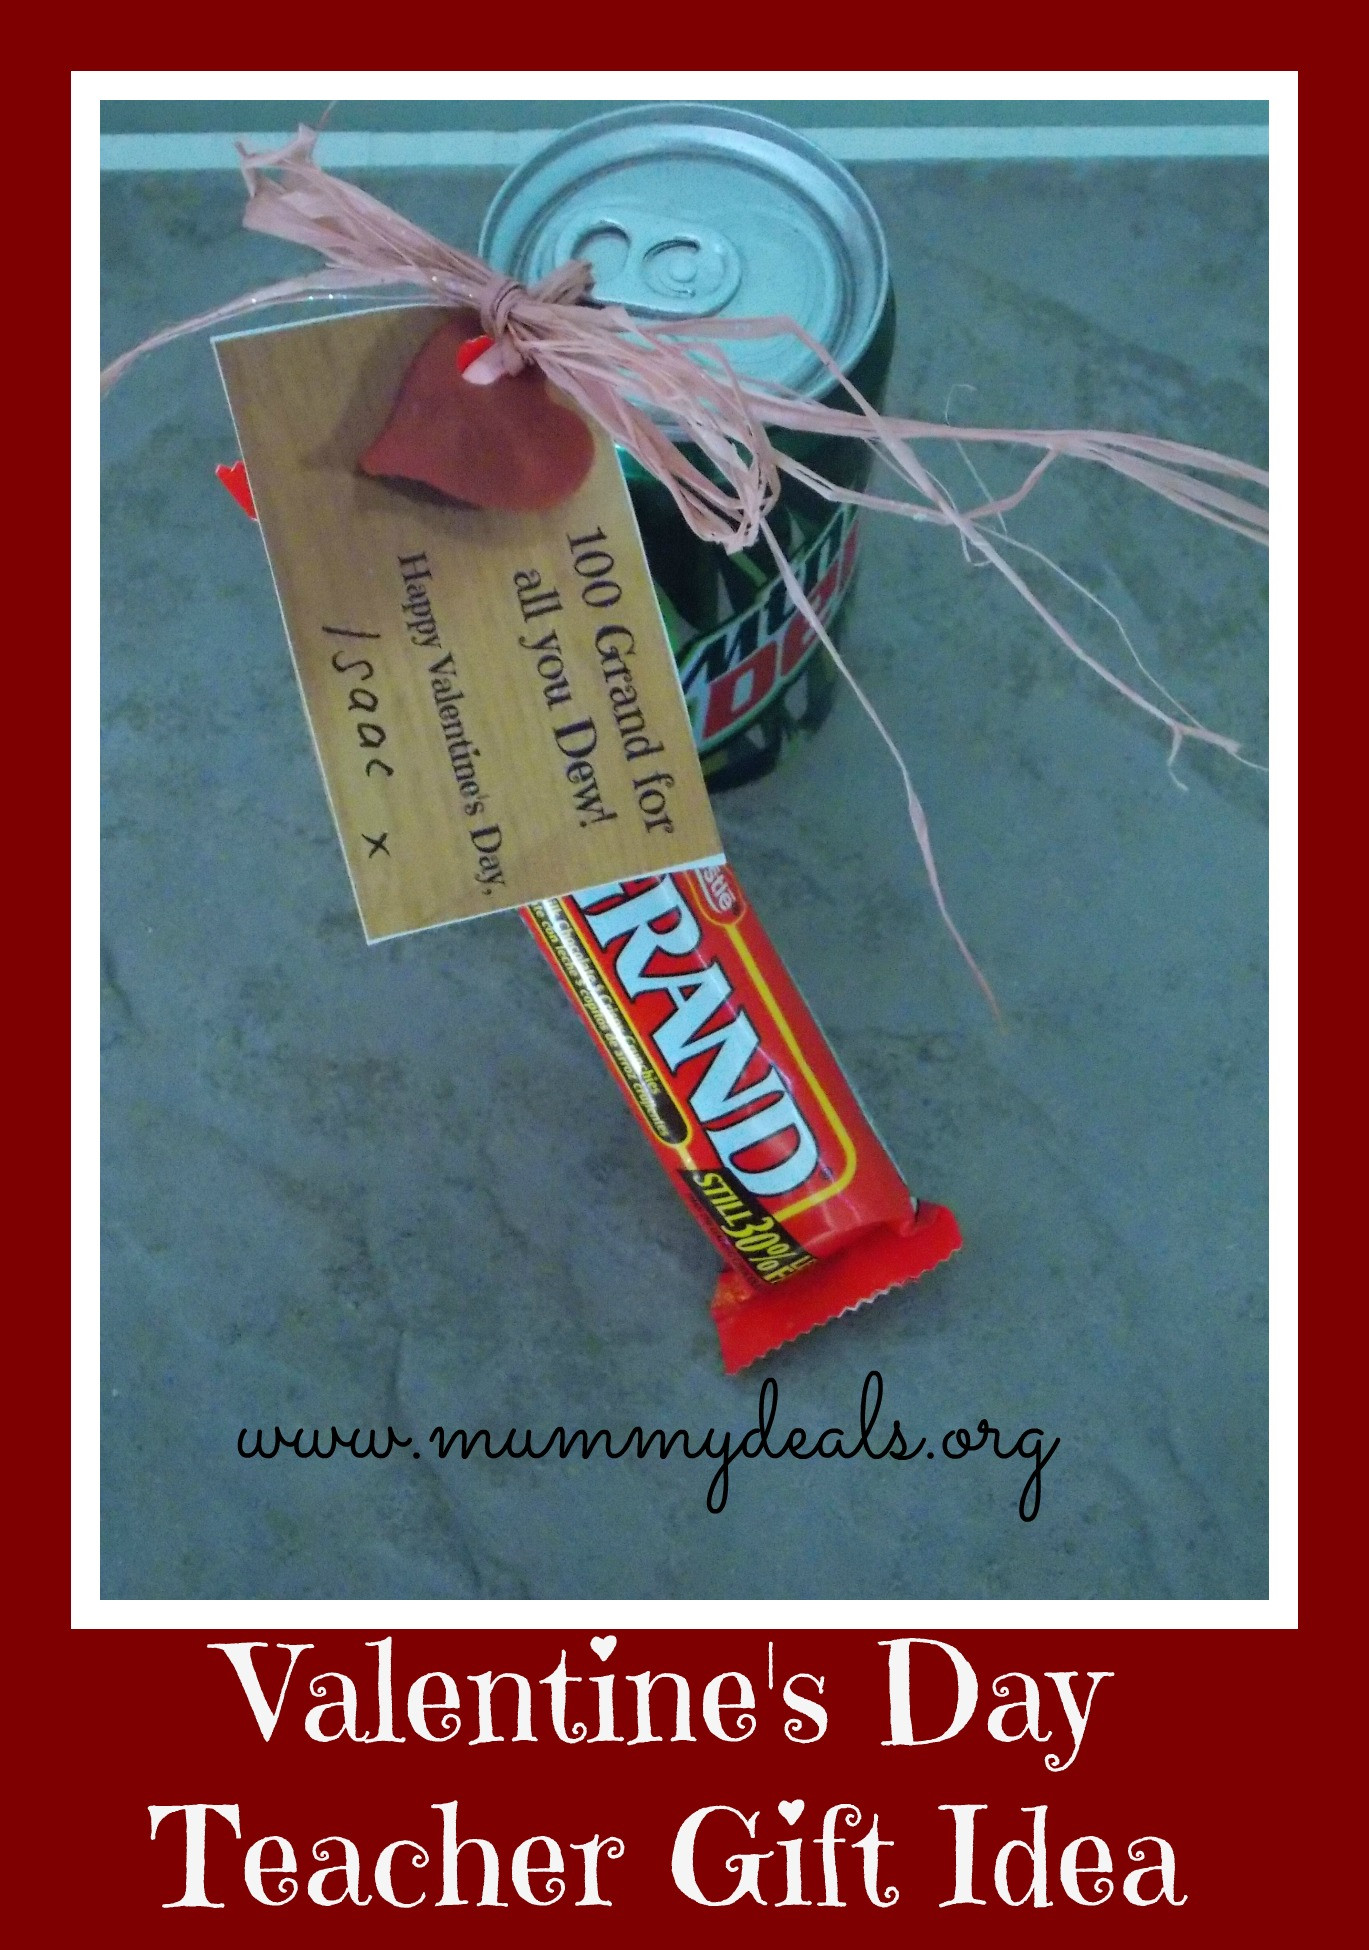 Teacher Valentines Gift Ideas
 6 Valentine s Day Teacher Gift Ideas Mummy Deals